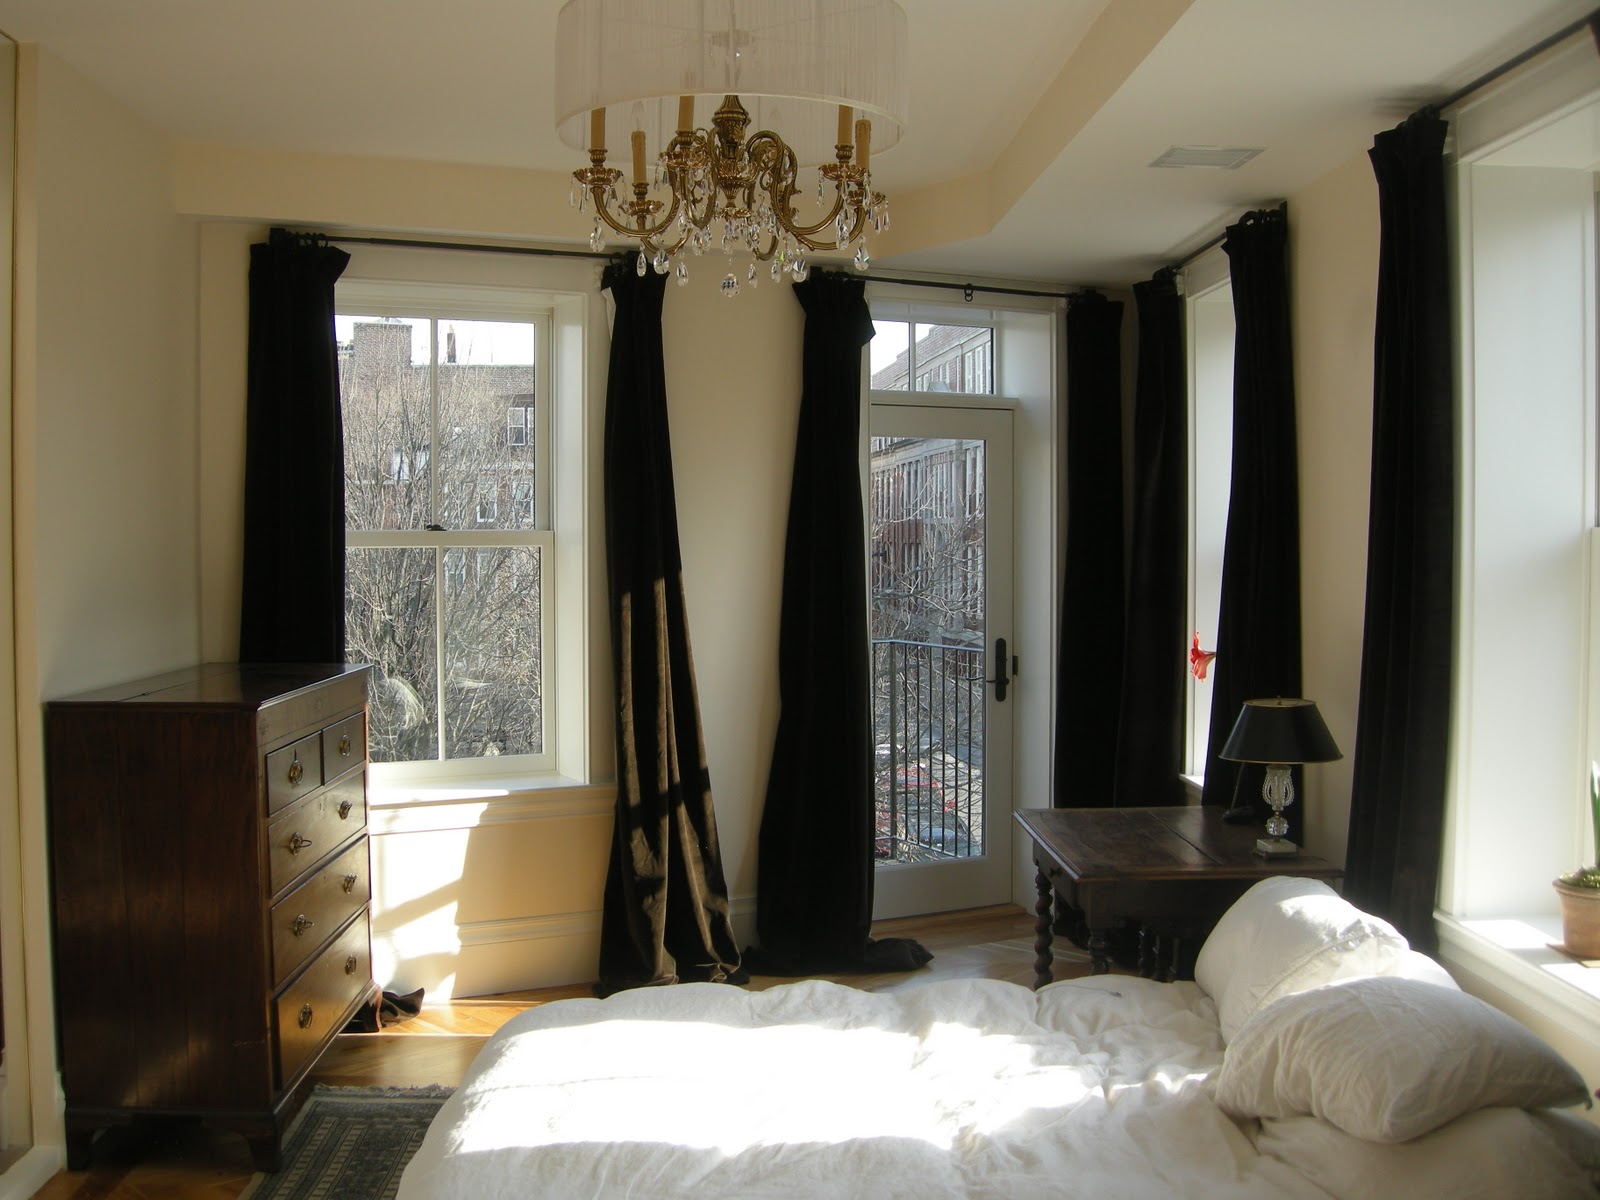 redbrickbuilding: Master bedroom curtains